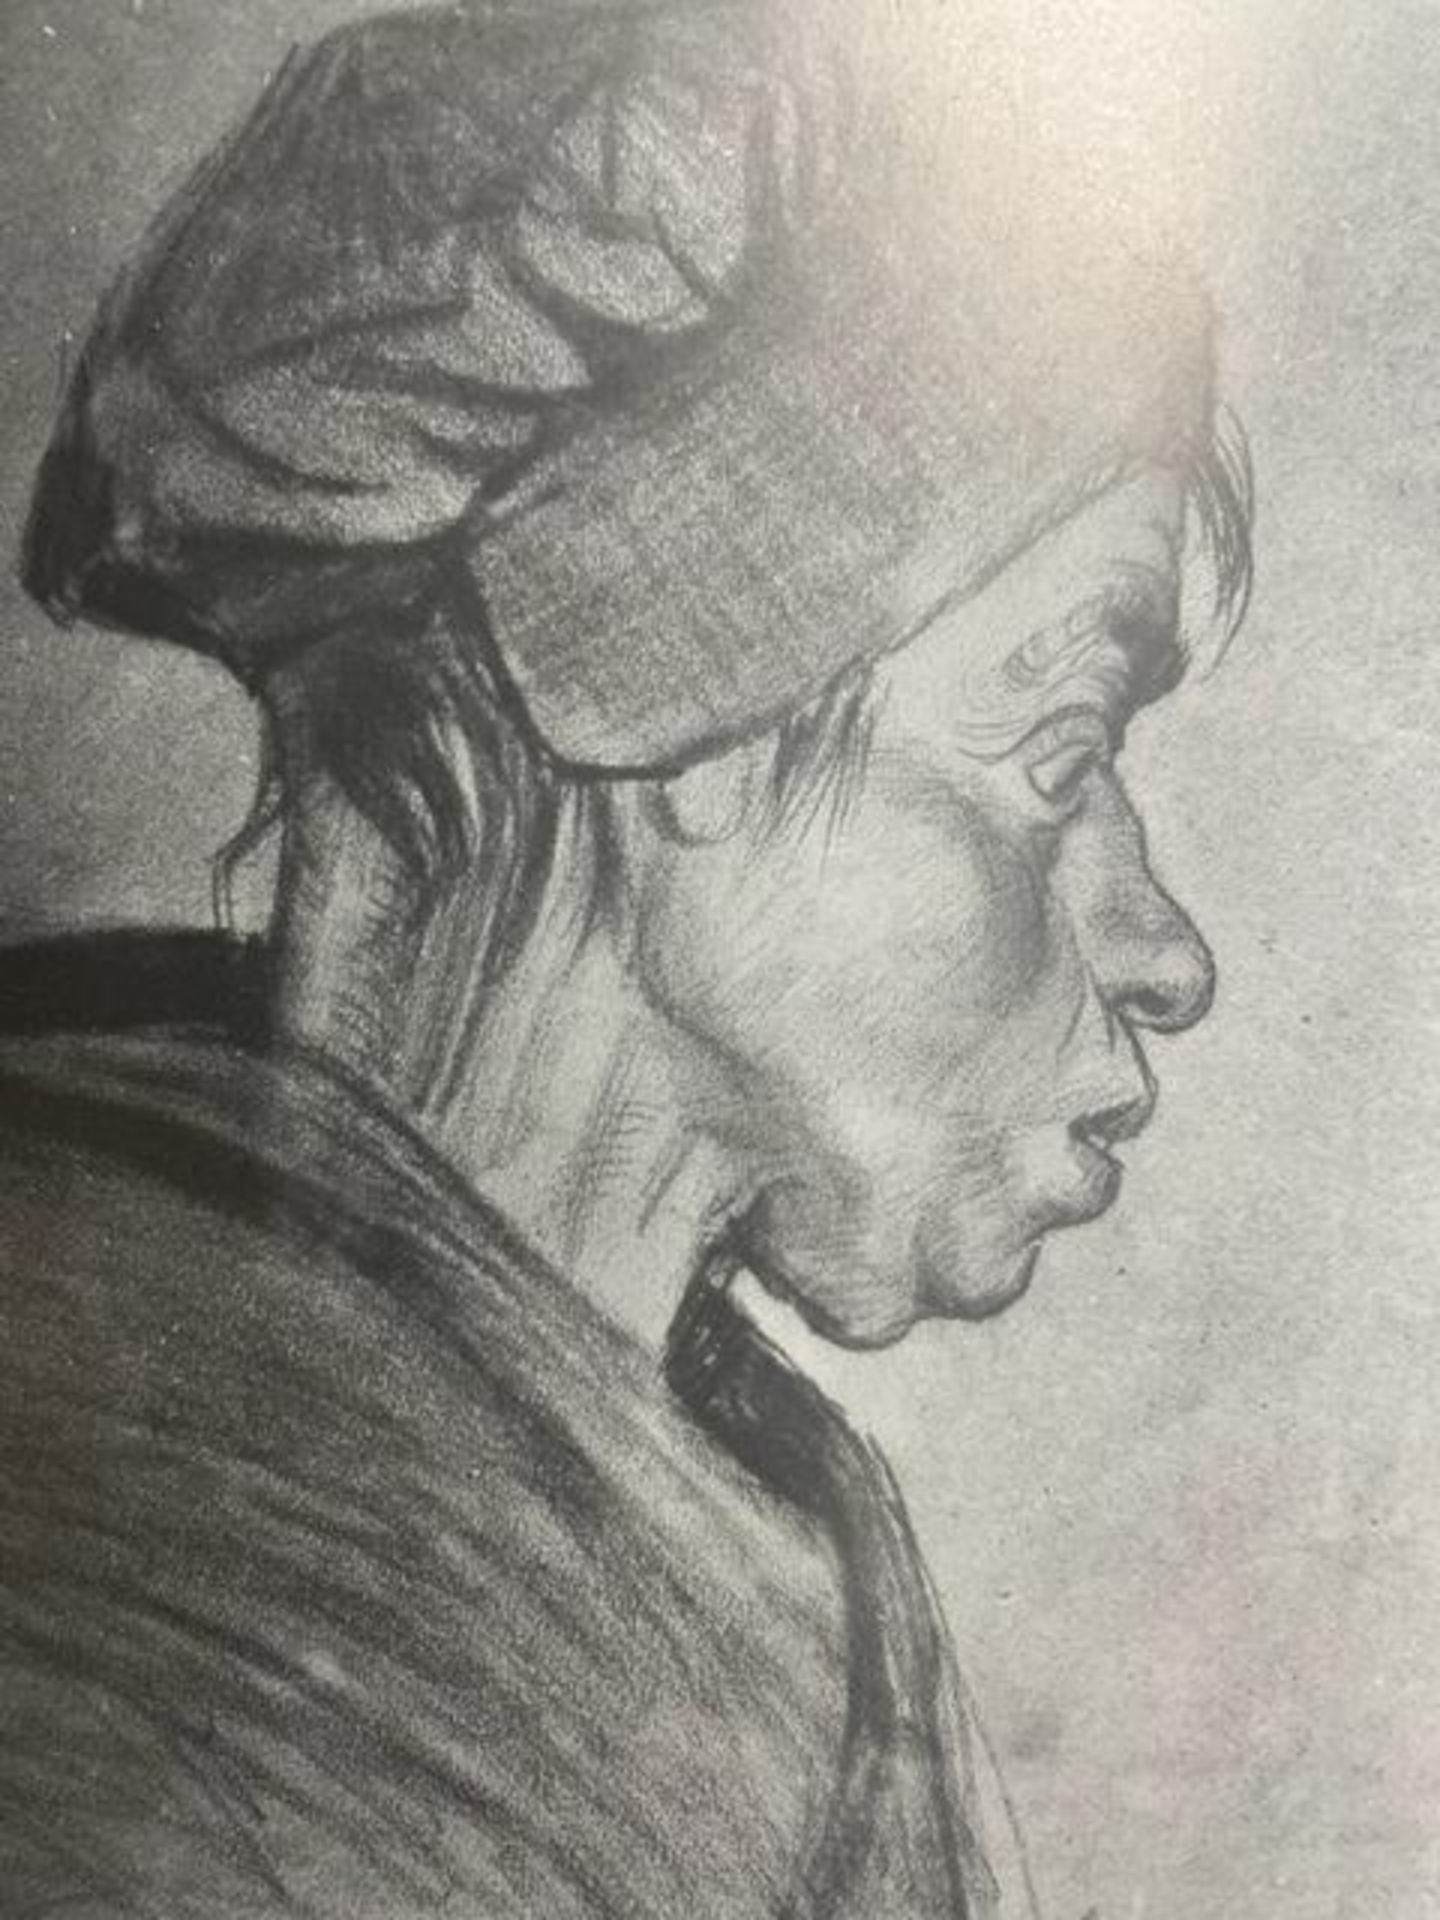 Vincent van Gogh "Peasant Woman" Print. - Image 6 of 6